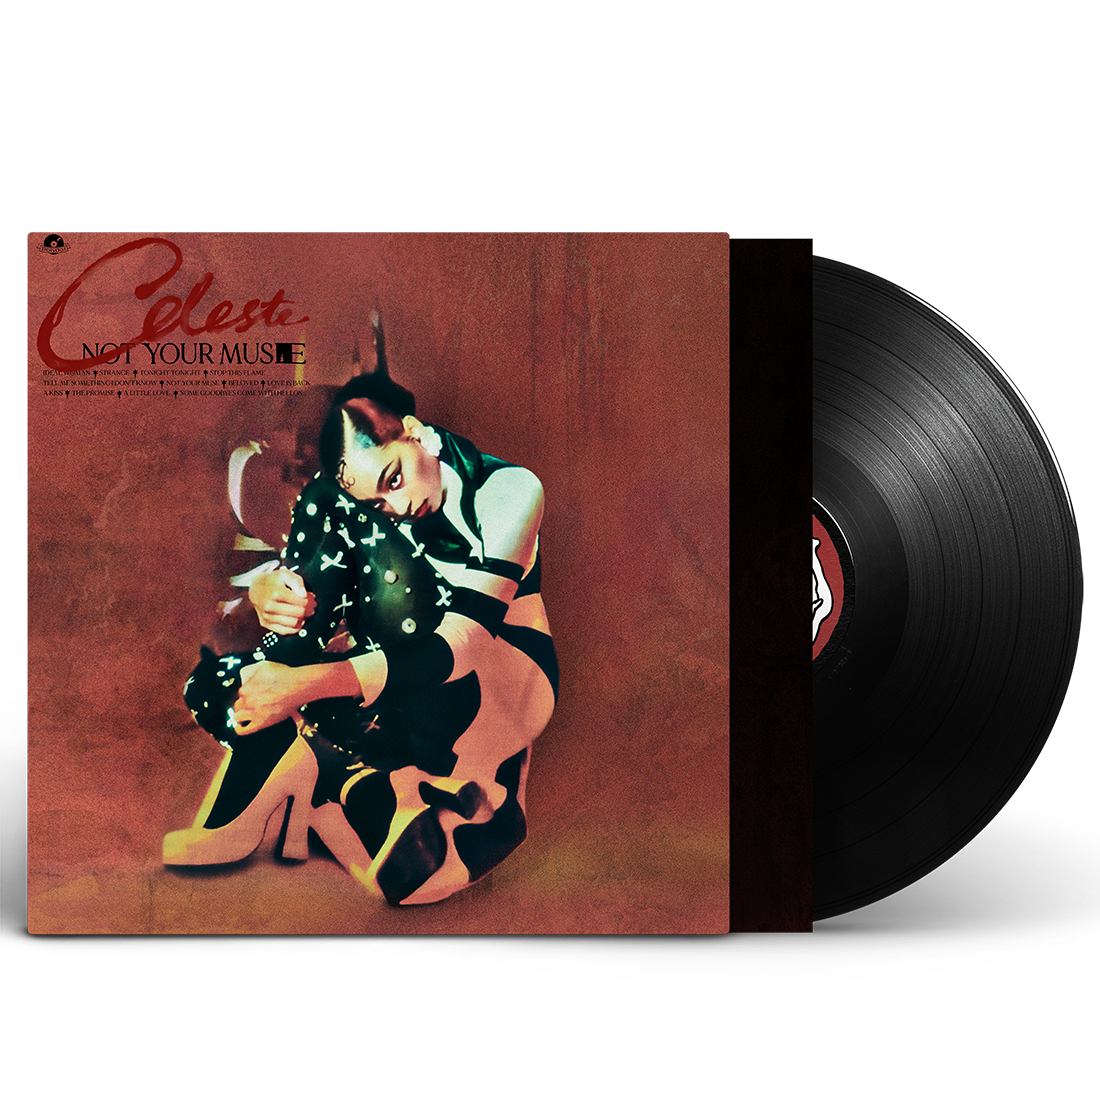 Celeste - Not Your Muse (12 Track Version): Vinyl LP